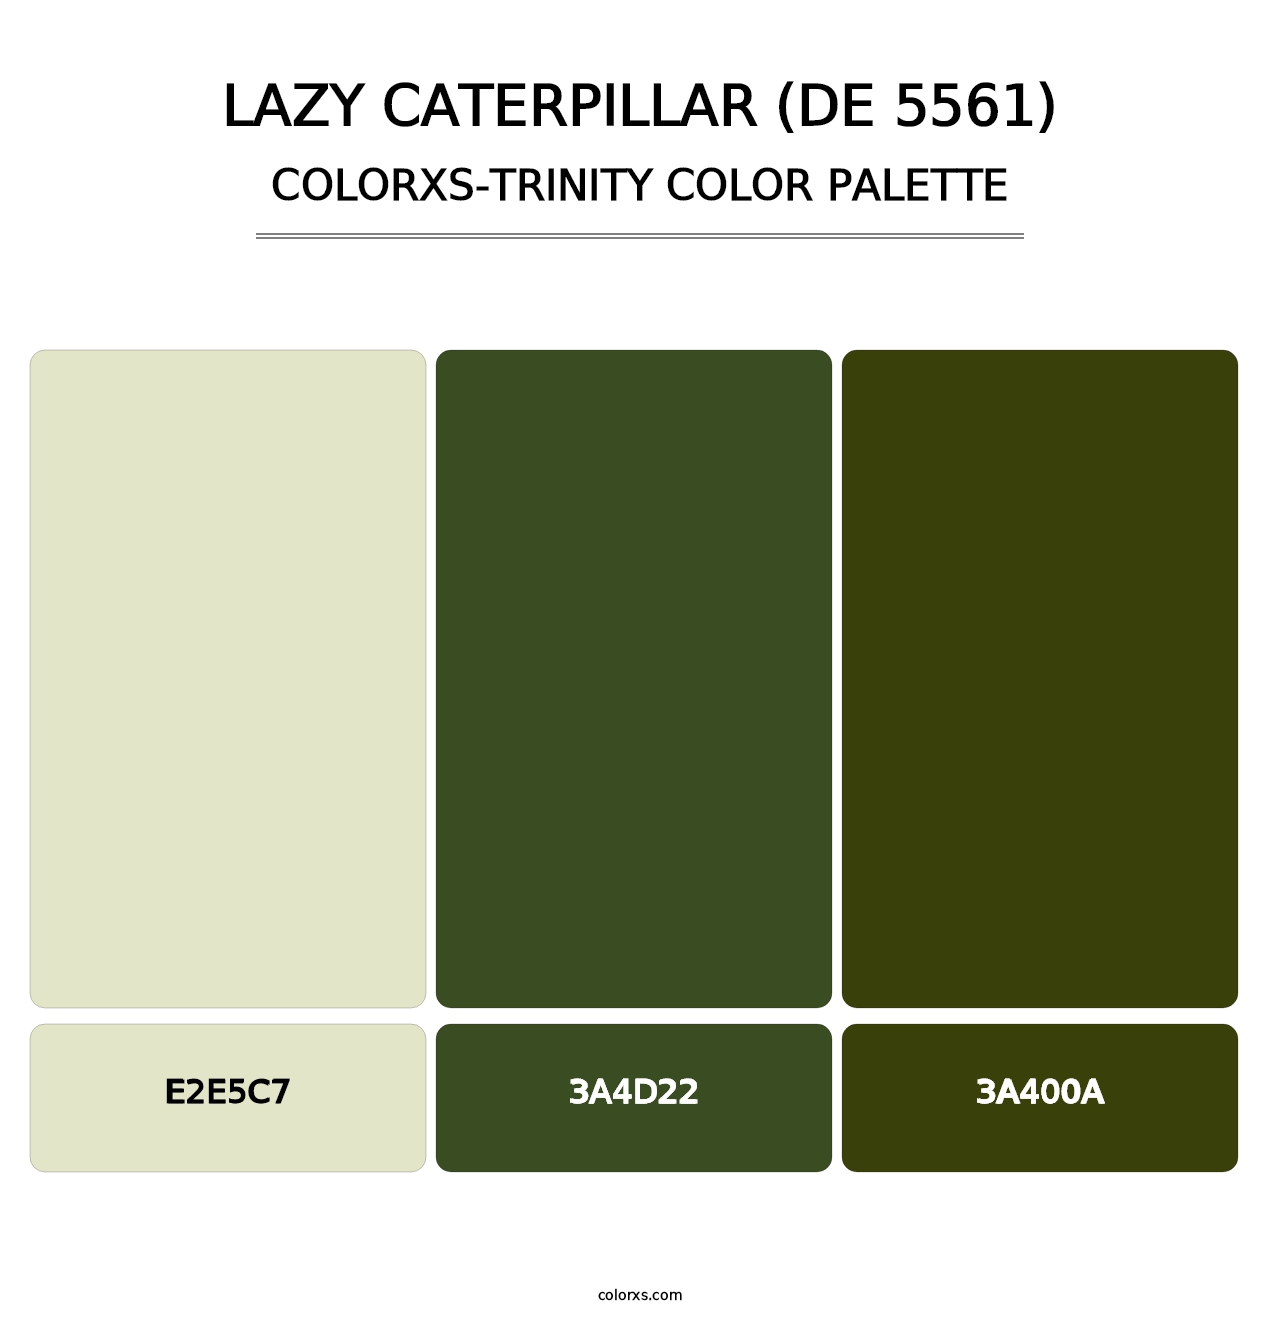 Lazy Caterpillar (DE 5561) - Colorxs Trinity Palette